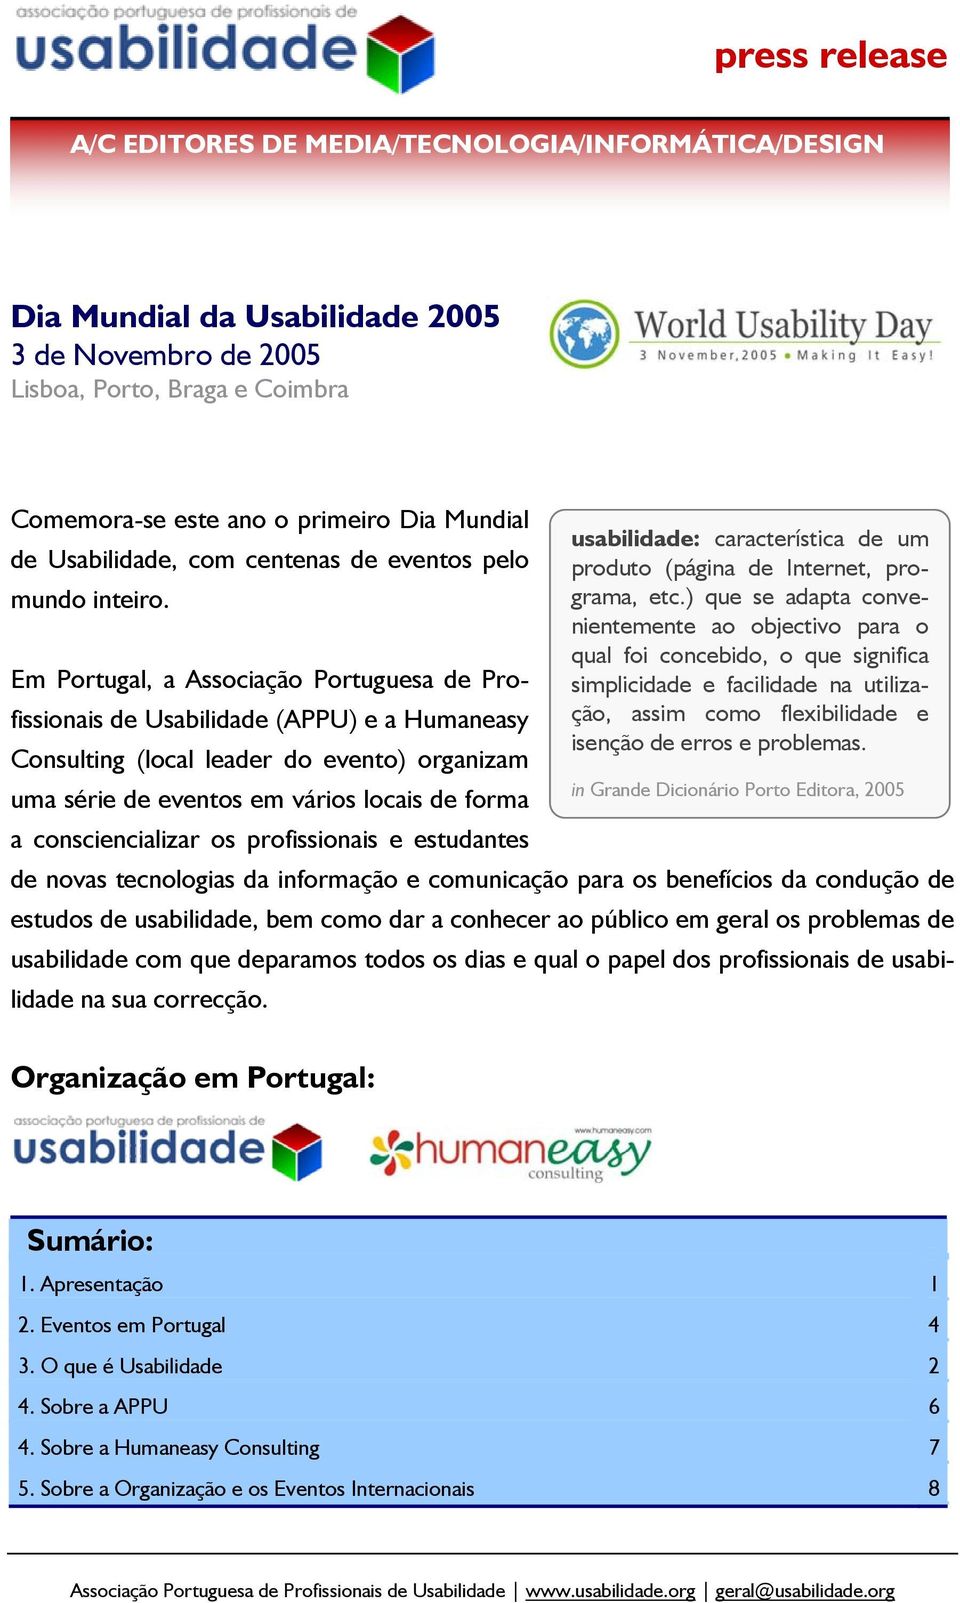 nientemente ao objectivo para o qual foi concebido, o que significa Em Portugal, a Associação Portuguesa de Profissionais de Usabilidade (APPU) e a Humaneasy ção, assim como flexibilidade e